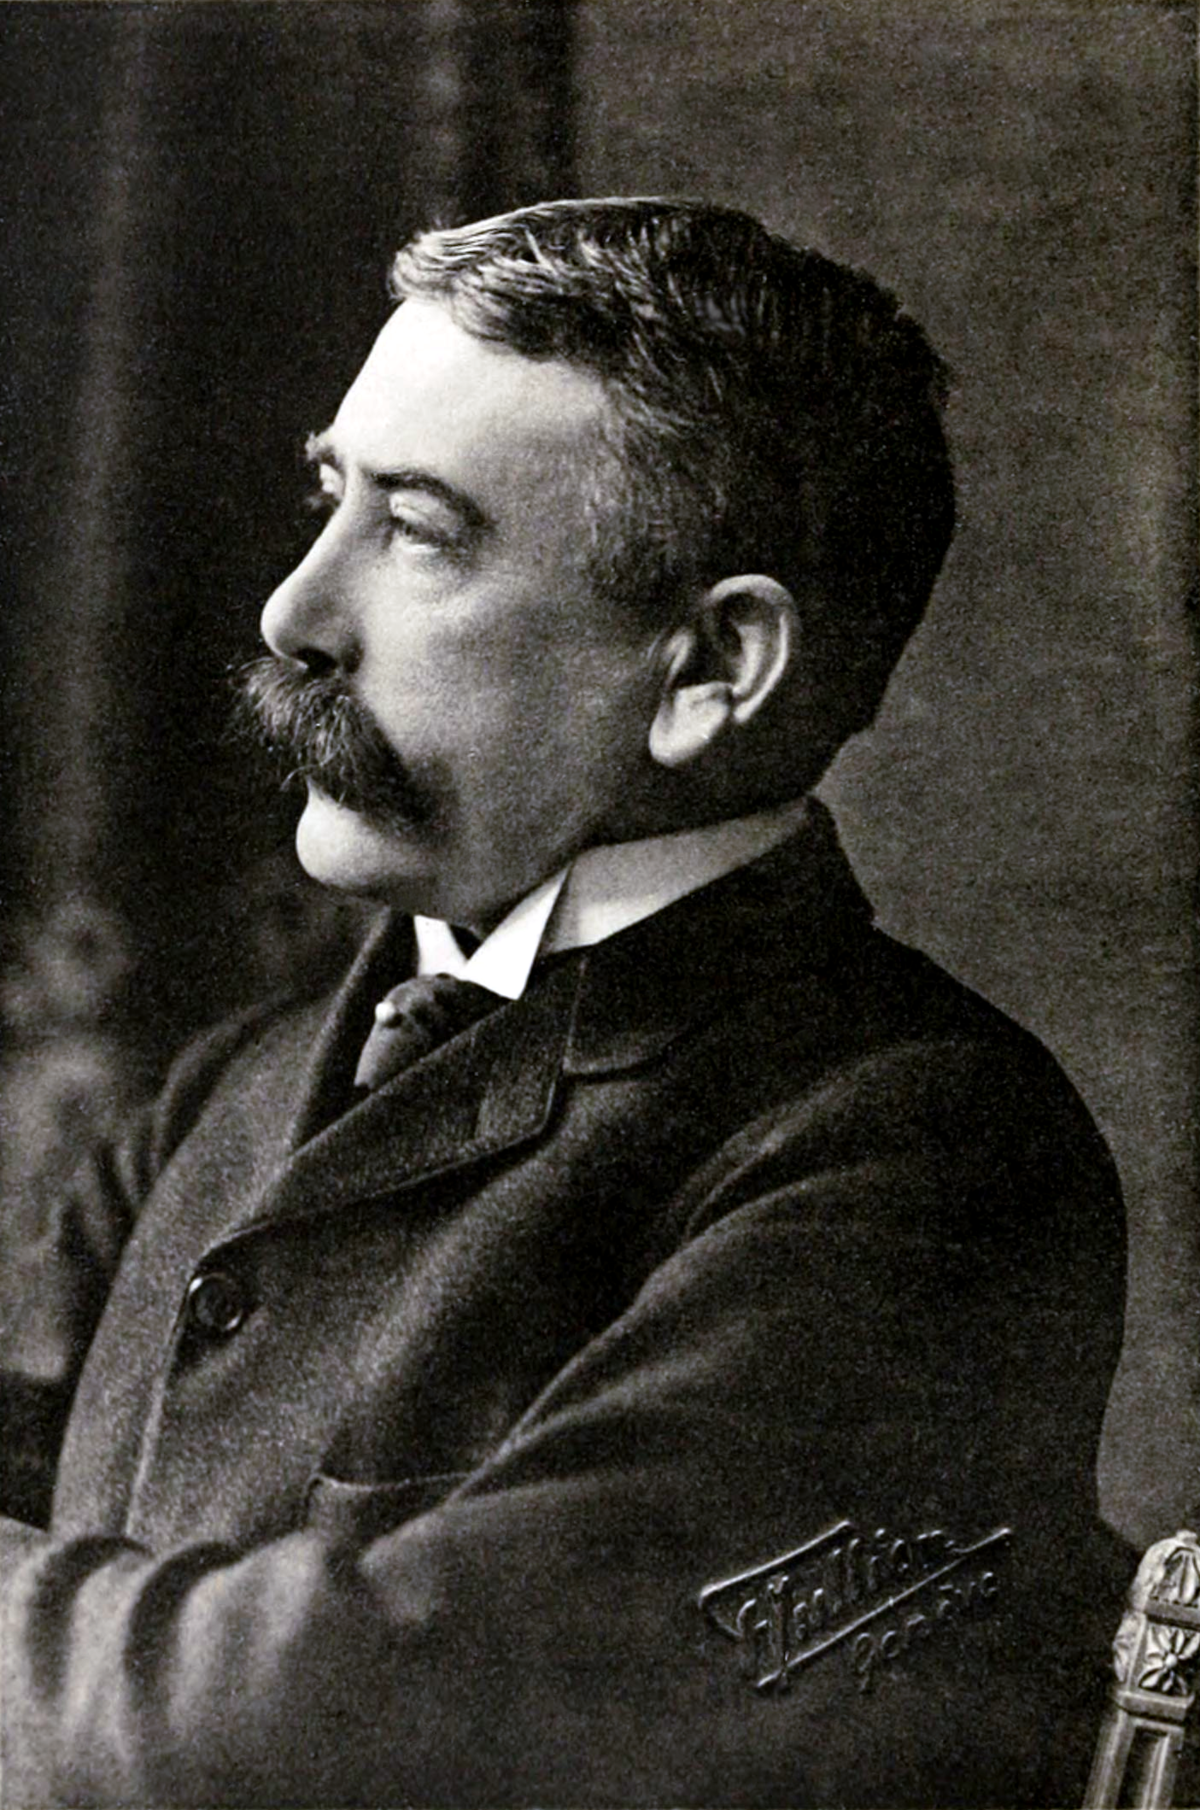 Birth of Ferdinand de Saussure